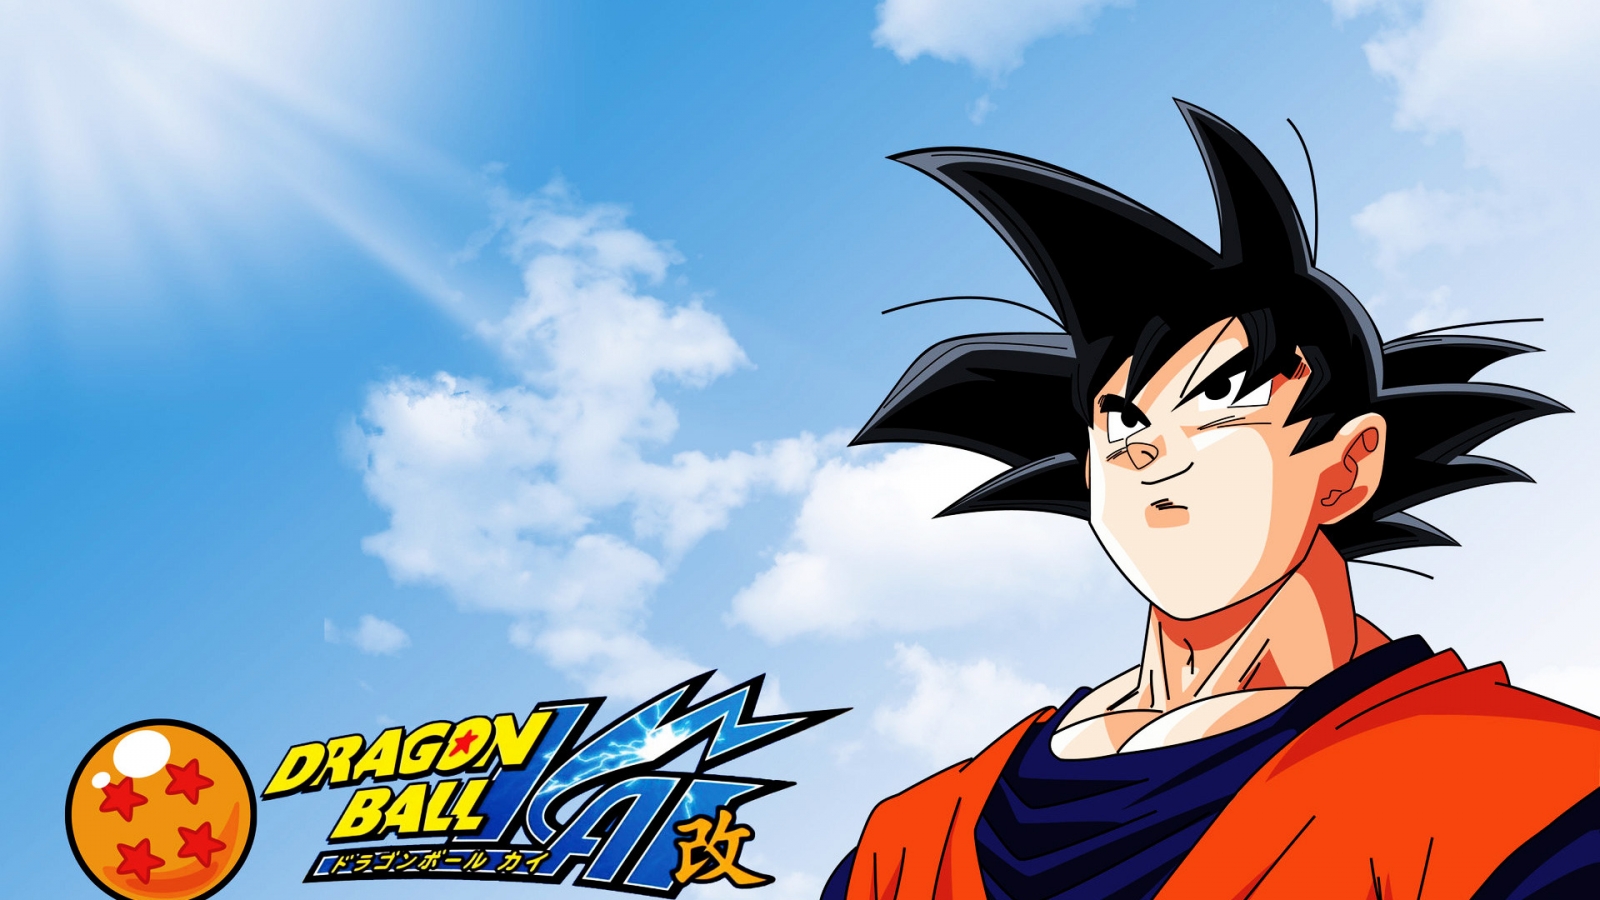 Dragon Ball Manga for 1600 x 900 HDTV resolution